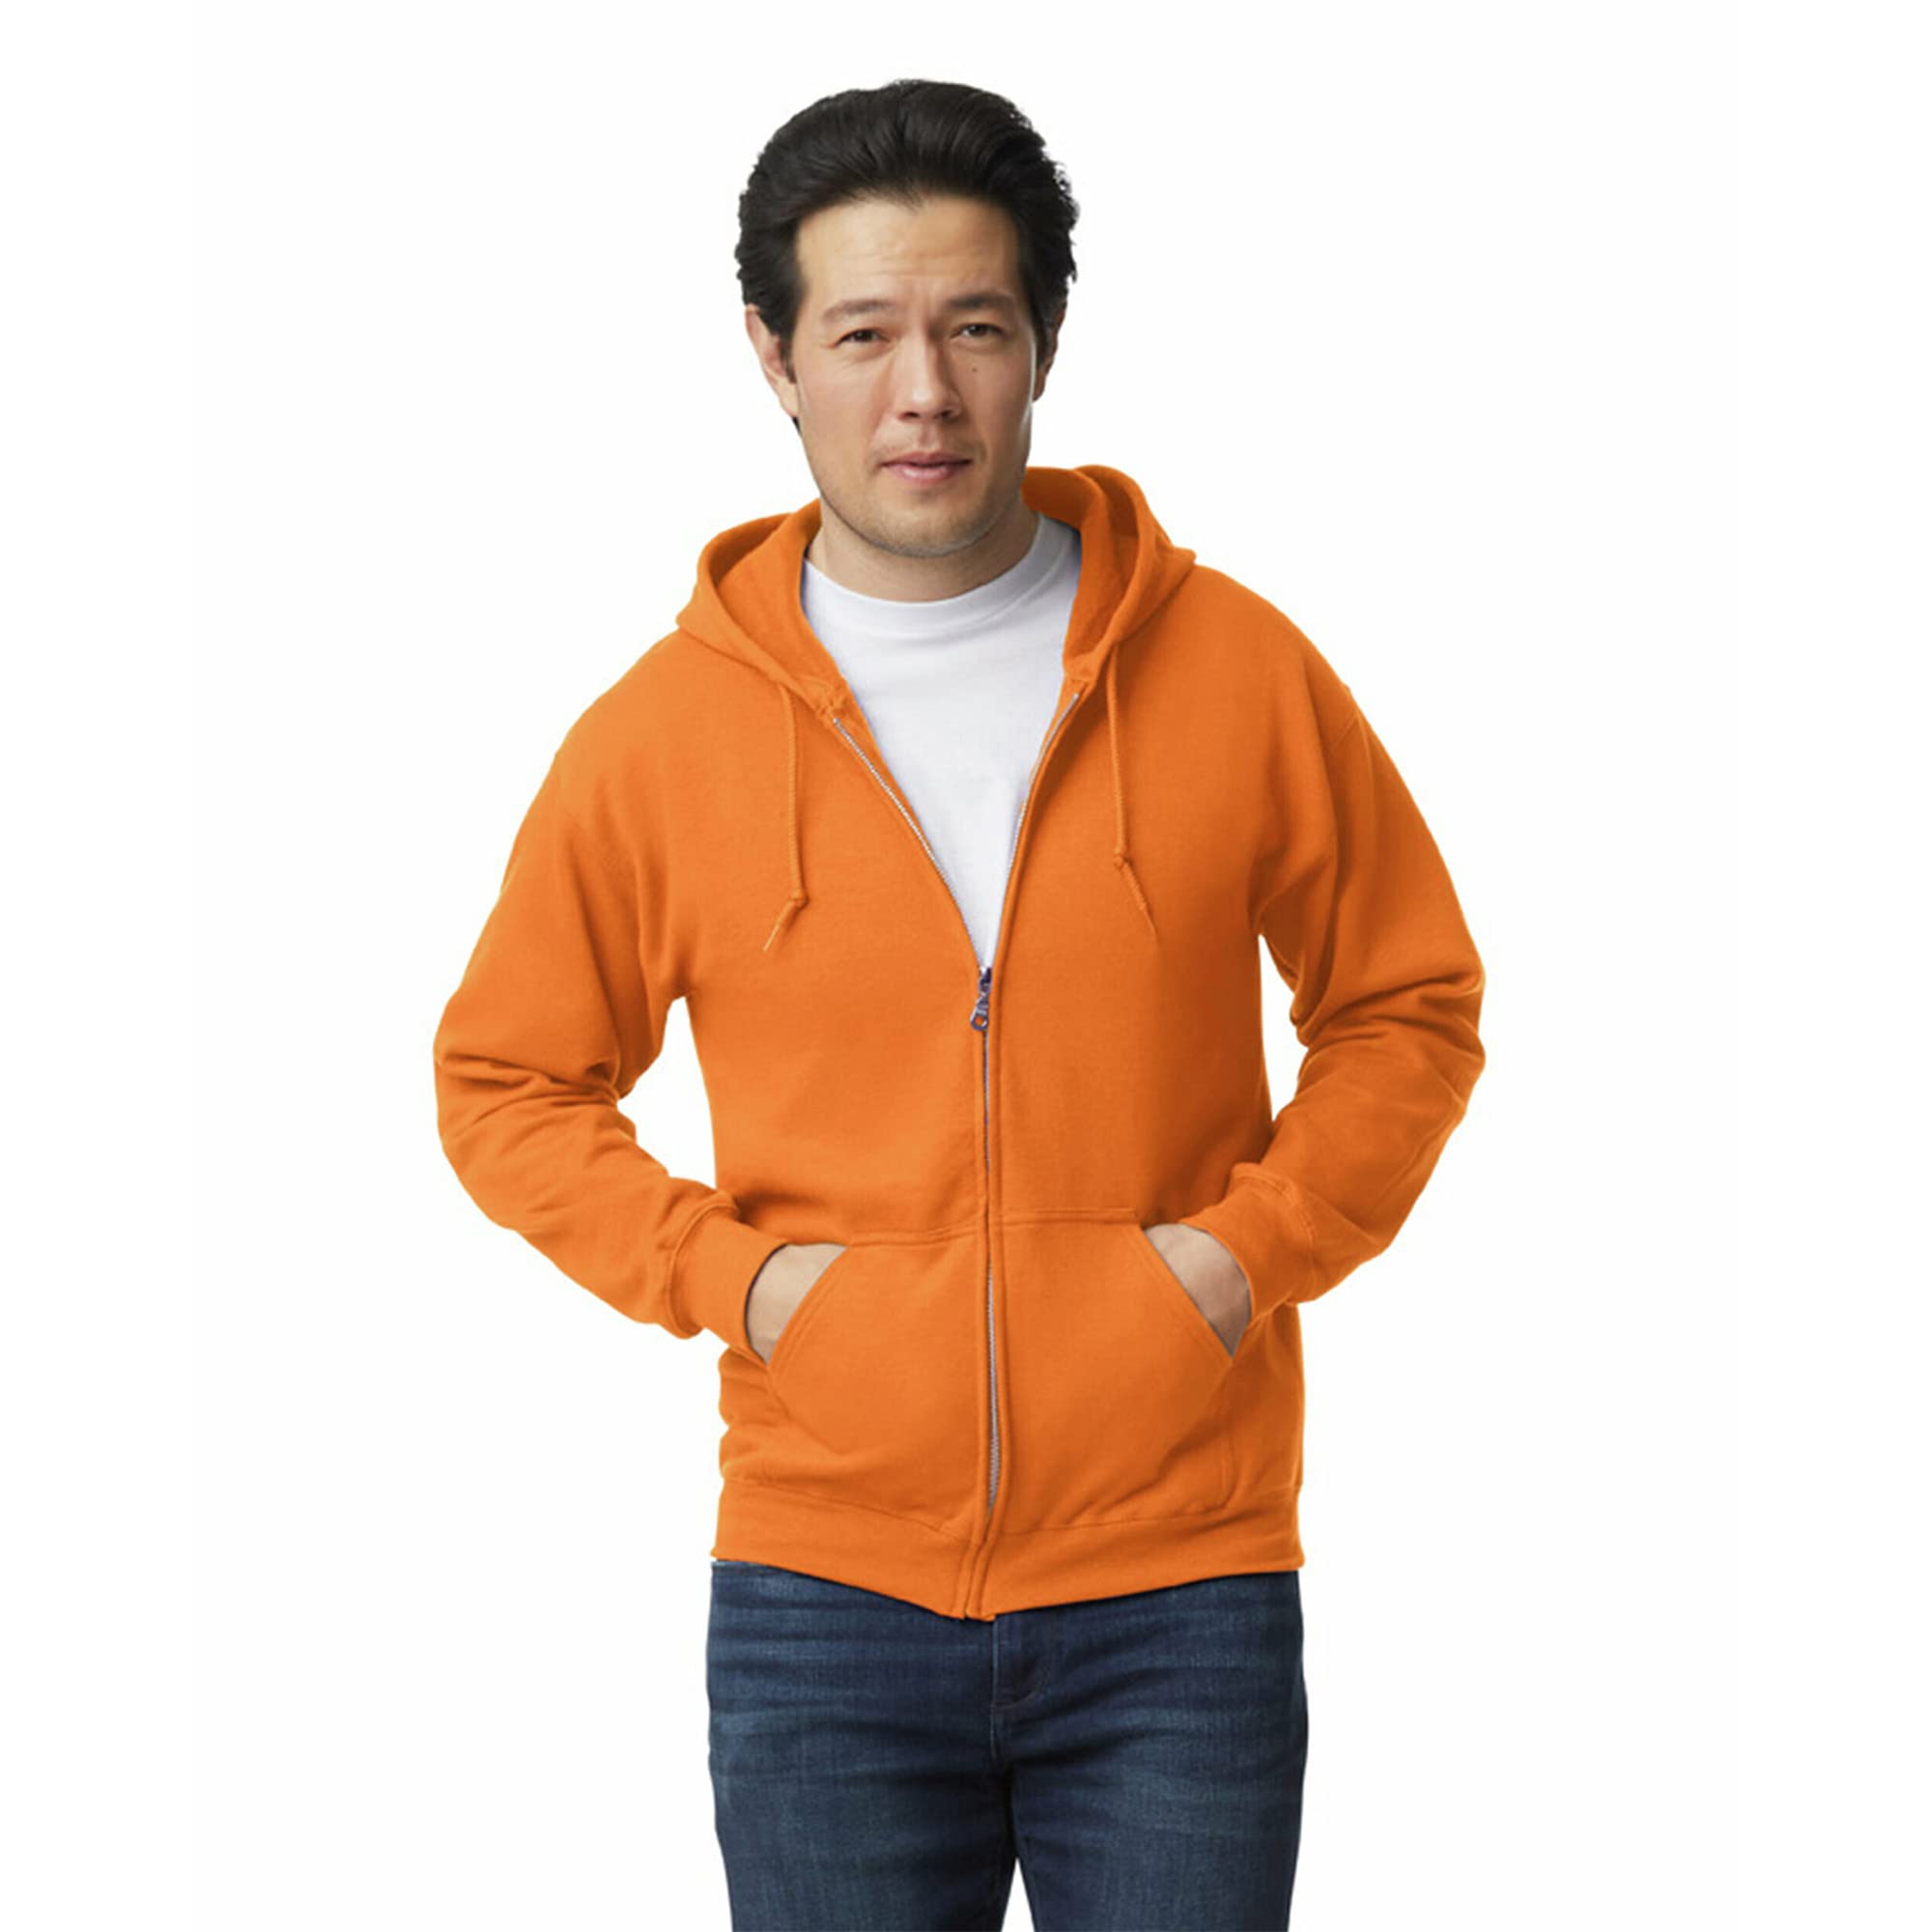 Gildan Adult Fleece Zip Hoodie Sweatshirt, Style G18600, Multipack, Safety Orange (1-pack), X-Large